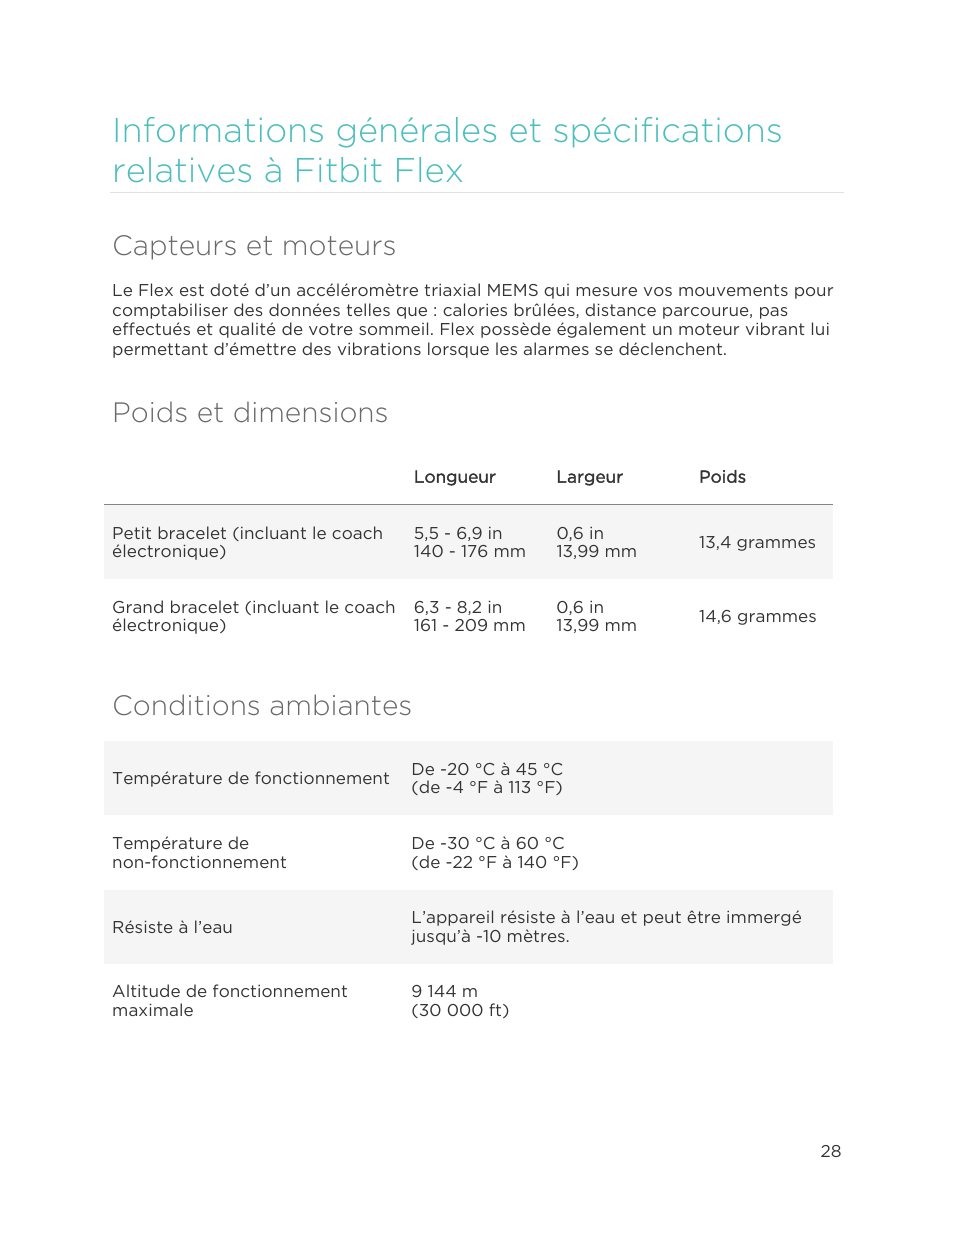 Capteurs et moteurs, Poids et dimensions, Conditions ambiantes | Fitbit Flex Manuel d'utilisation | Page 33 / 40